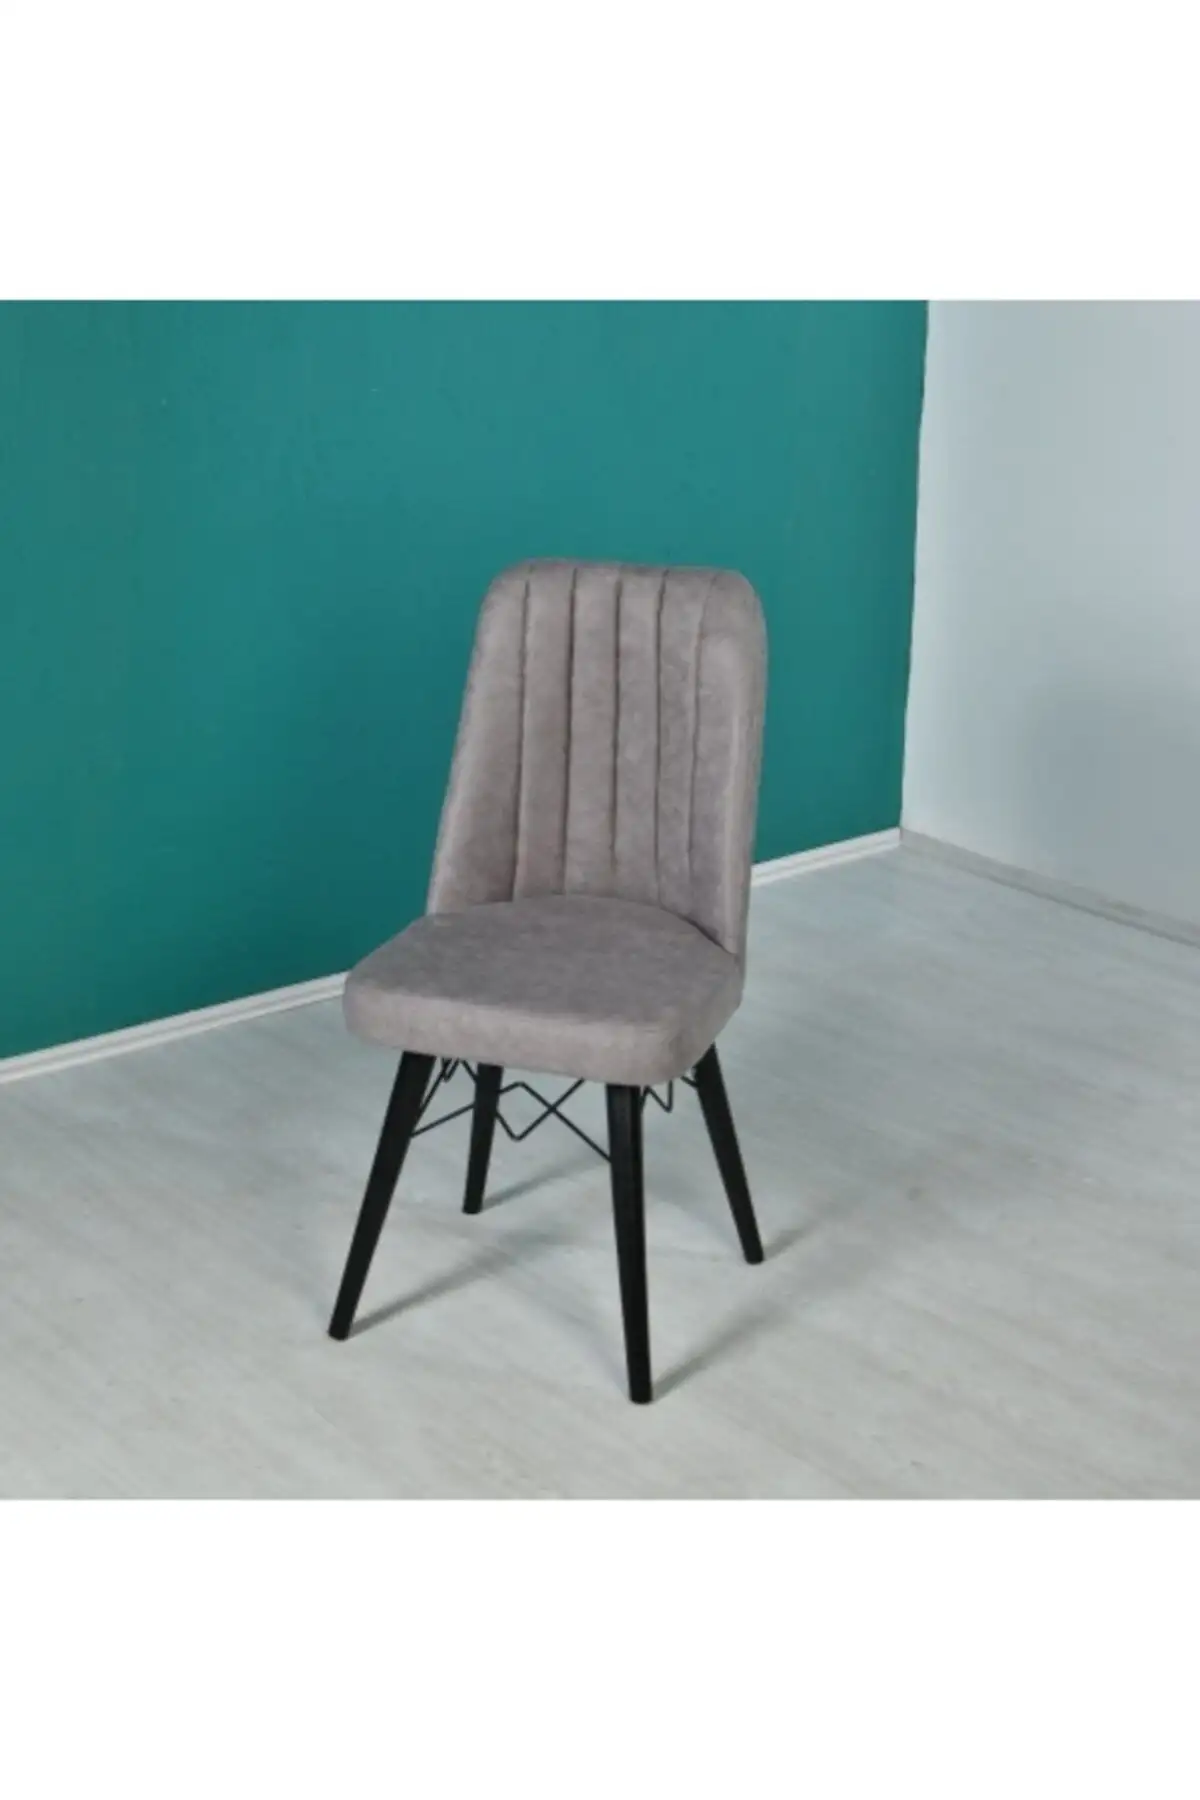 Set masa extensibila cu 4 scaune tapitate Homs cargold 250-30051 negru- gri 170 x 80 cm